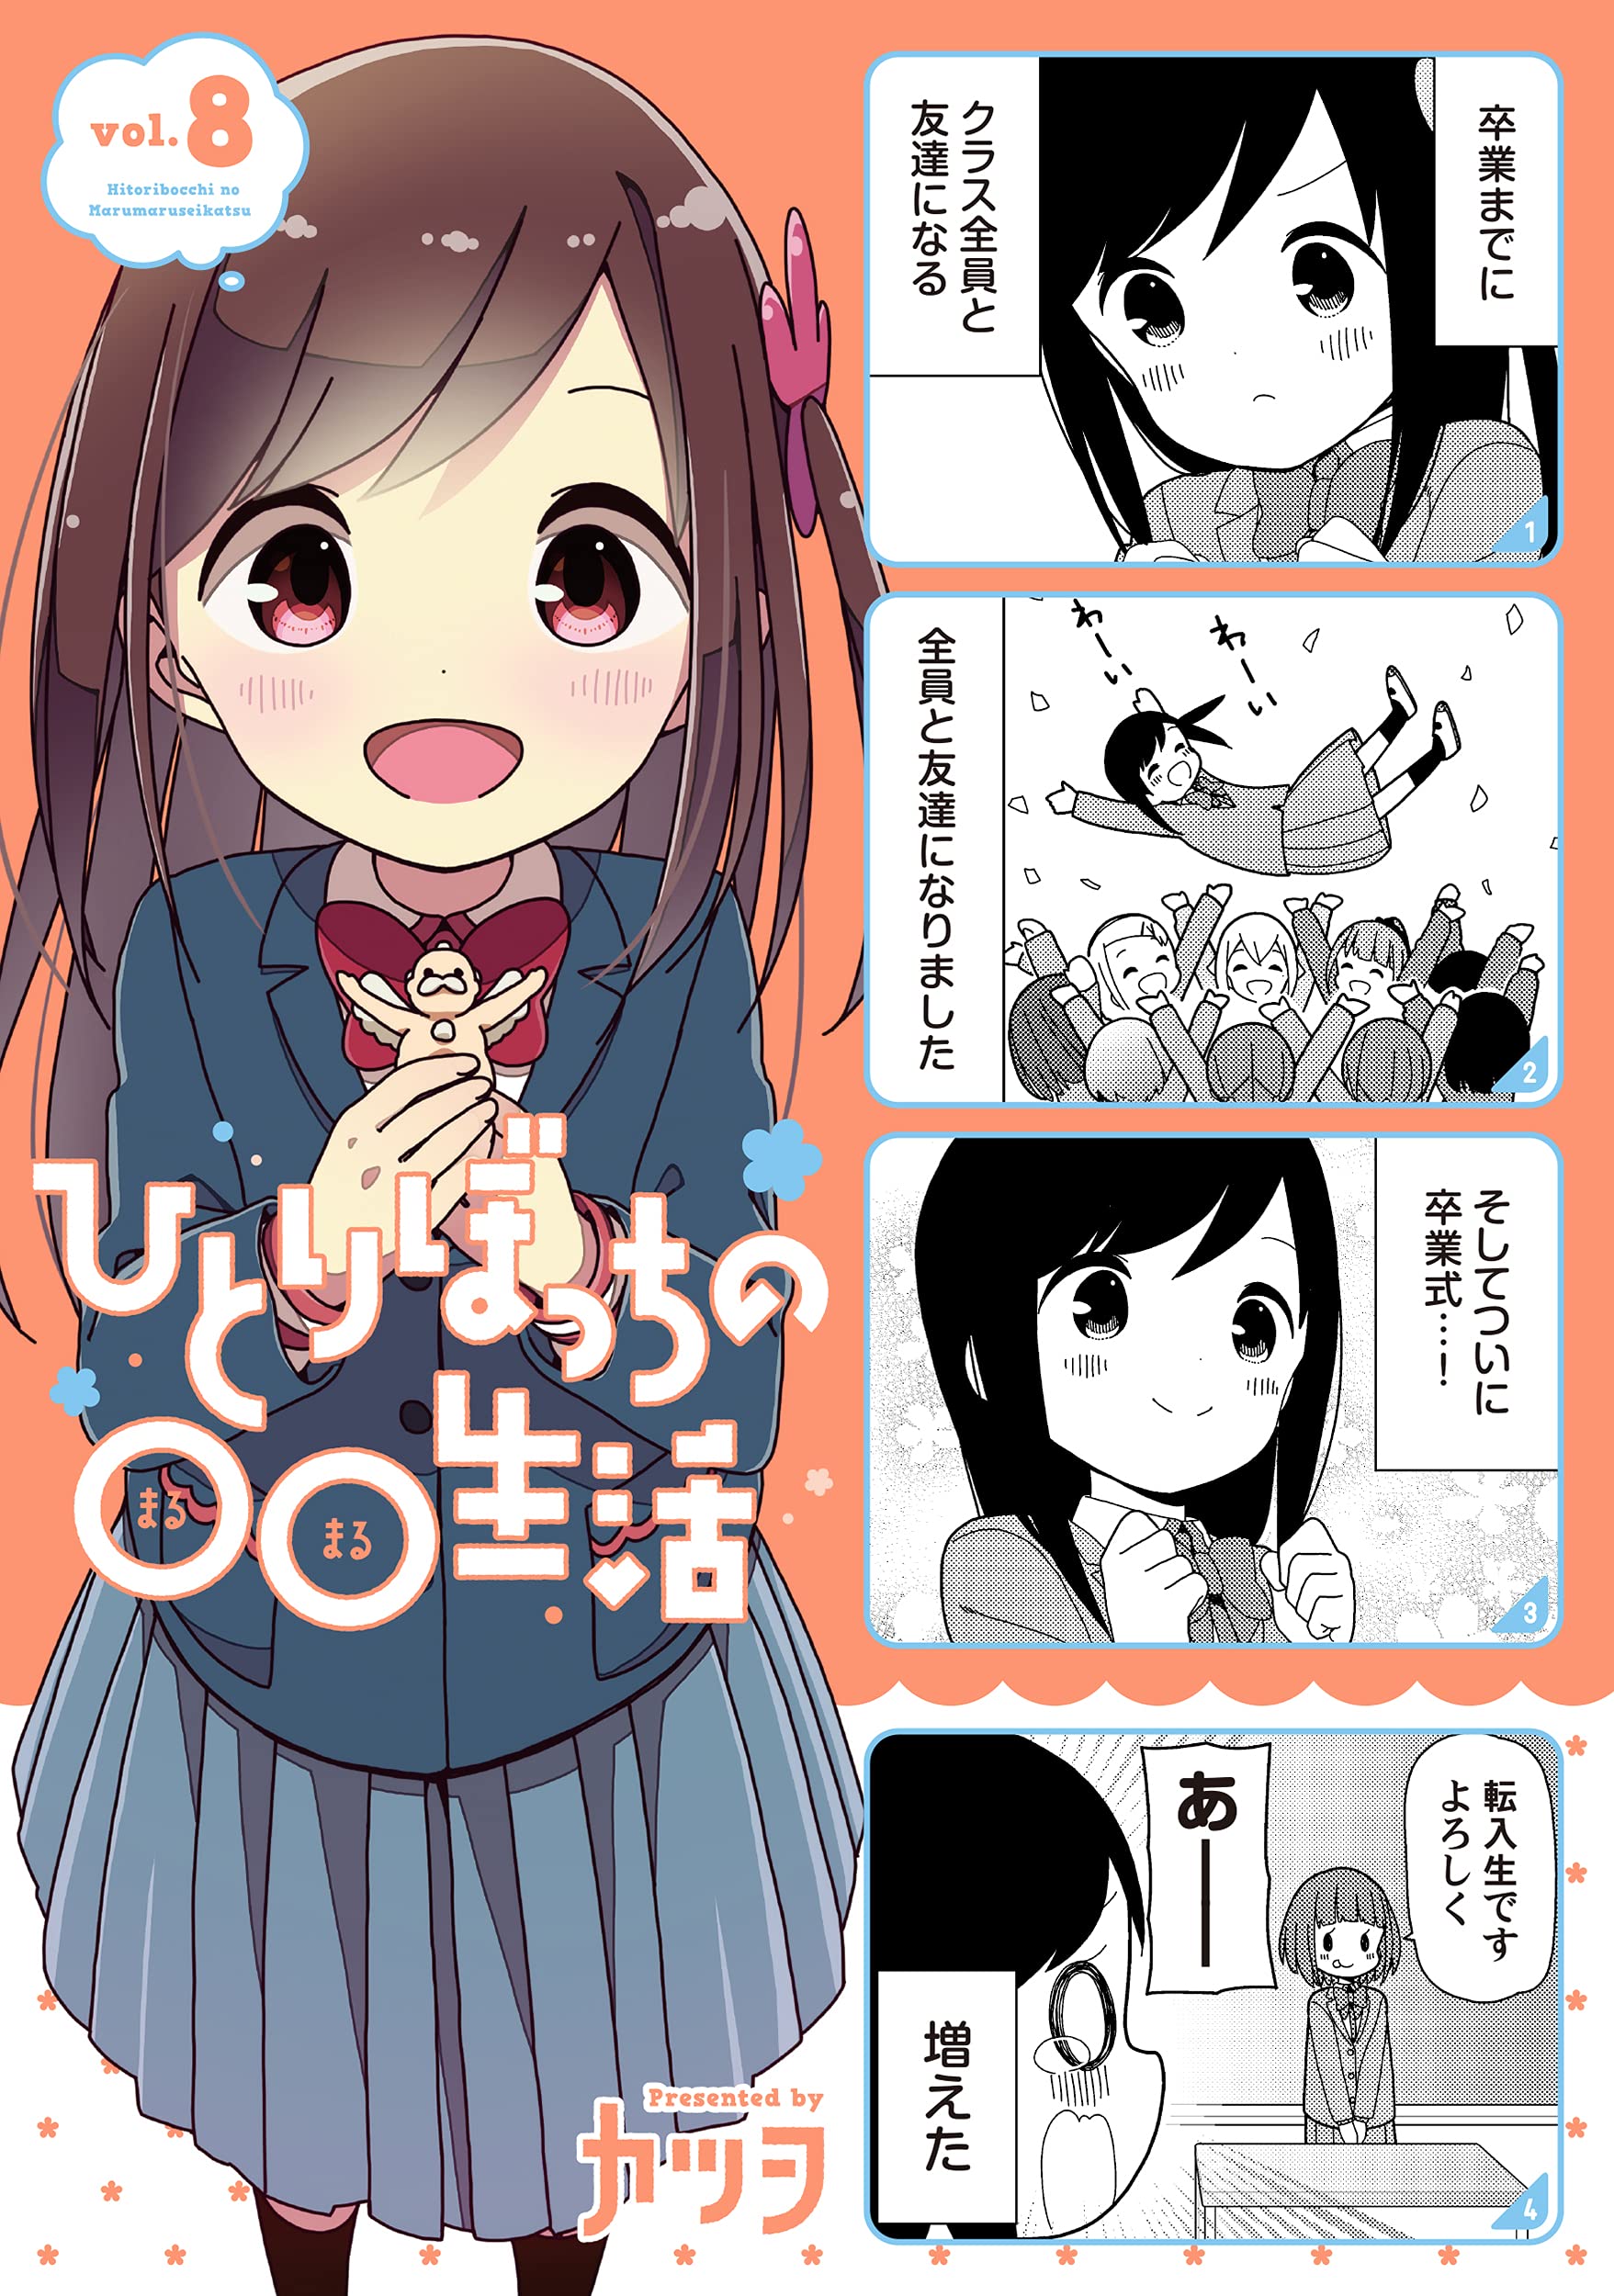 El manga Hitoribocchi no Marumaru Seikatsu está por finalizar — Kudasai